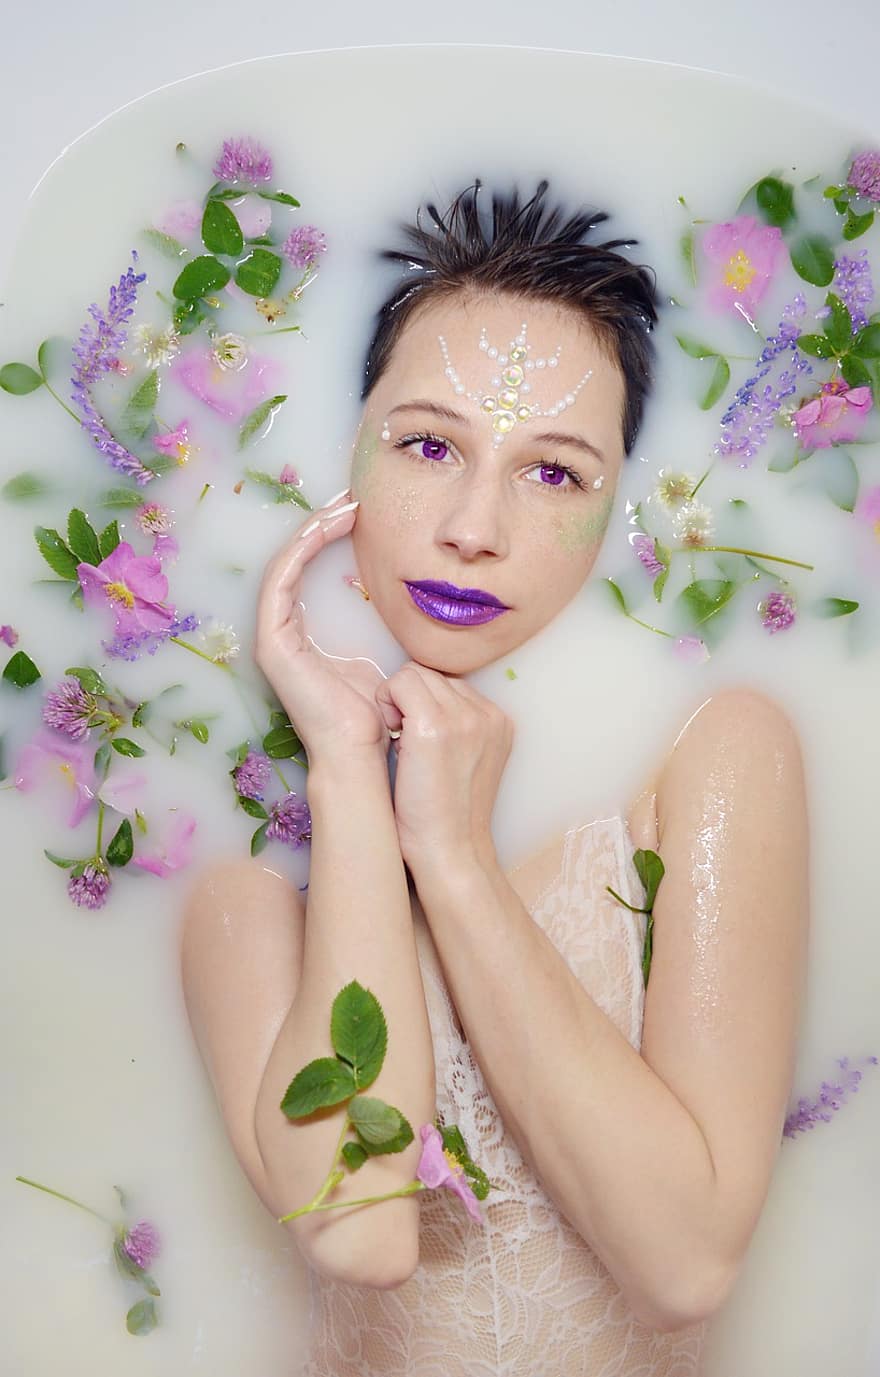 La Noia De La Banyera, bany de llet, fulles, flors, violeta, els brots, banyar-se amb llet, Bany amb flors, maquillatge, Relaxa't Al Bany, spa